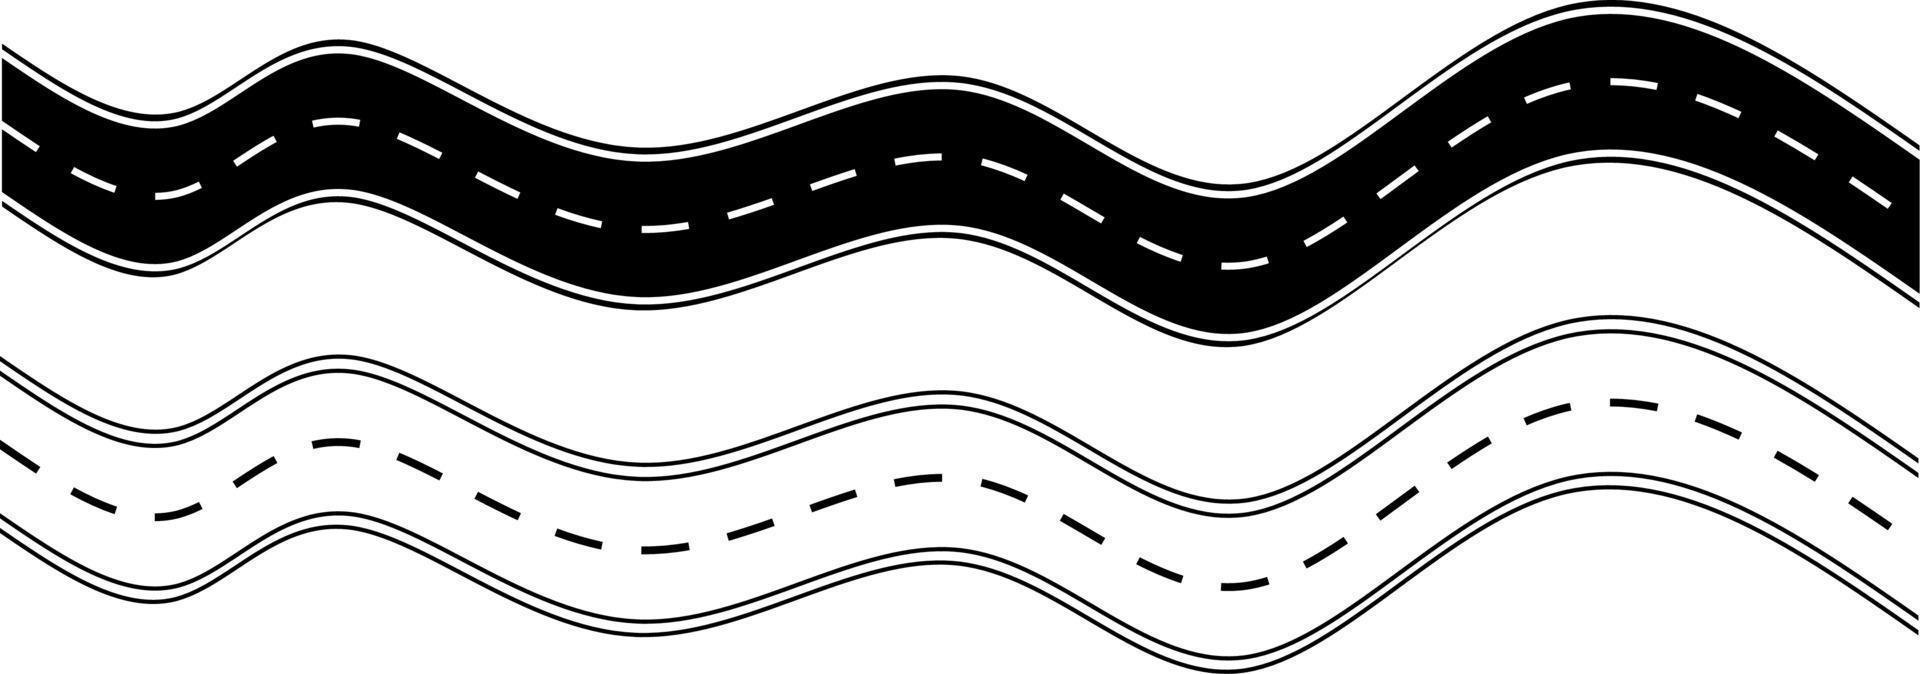 conjunto de ícones de estrada de asfalto sinuoso vetor